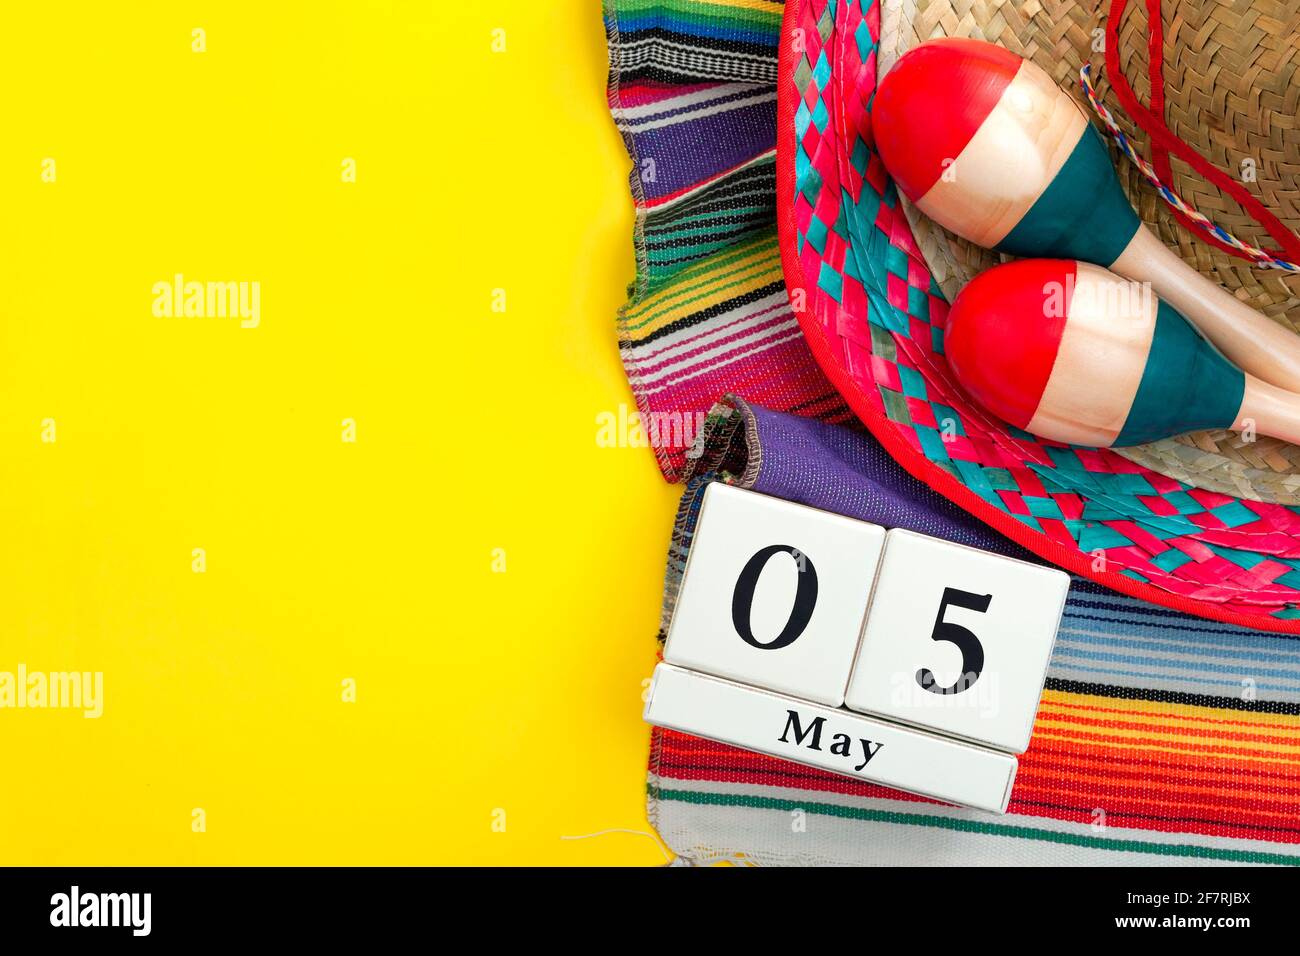 Manifesto messicano fiesta e tema del Cinco de Mayo party con calendario il 5 maggio, maracas rosso e blu, sombrero e tappeto tradizionale su giallo bac Foto Stock